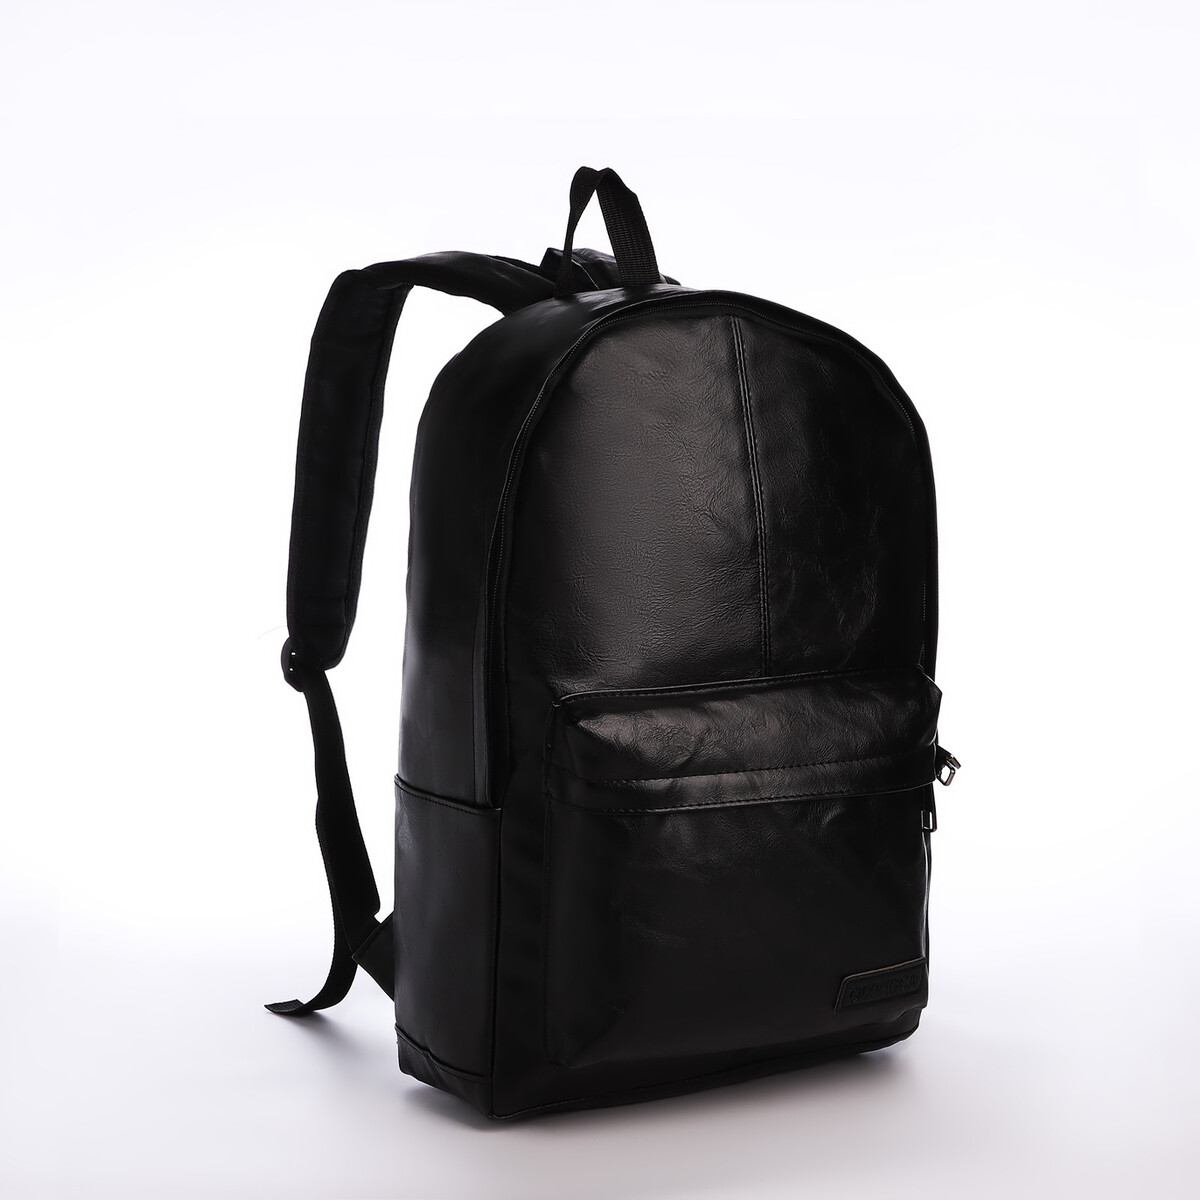 Рюкзак городской из искусственной кожи на молнии, 3 кармана, цвет черный pixie рюкзак городской 267101